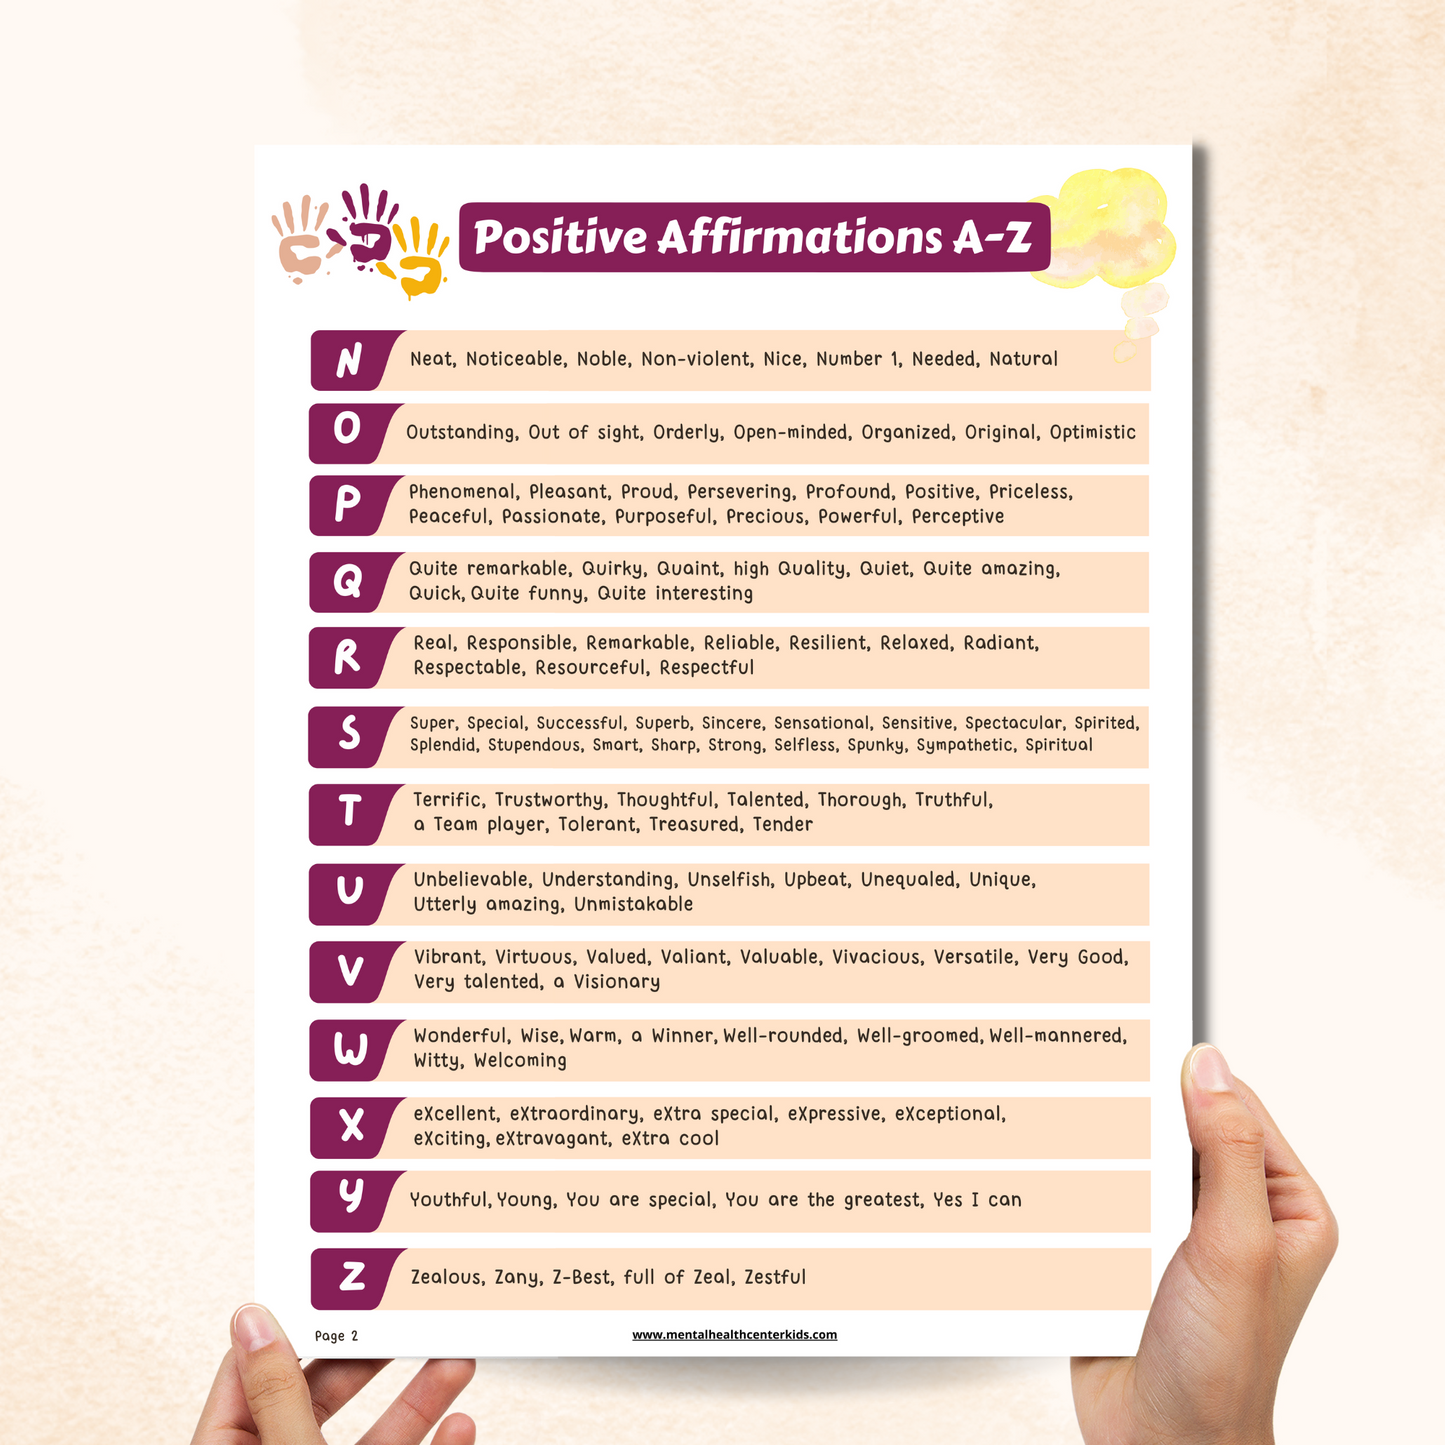 Positive Affirmations Worksheet